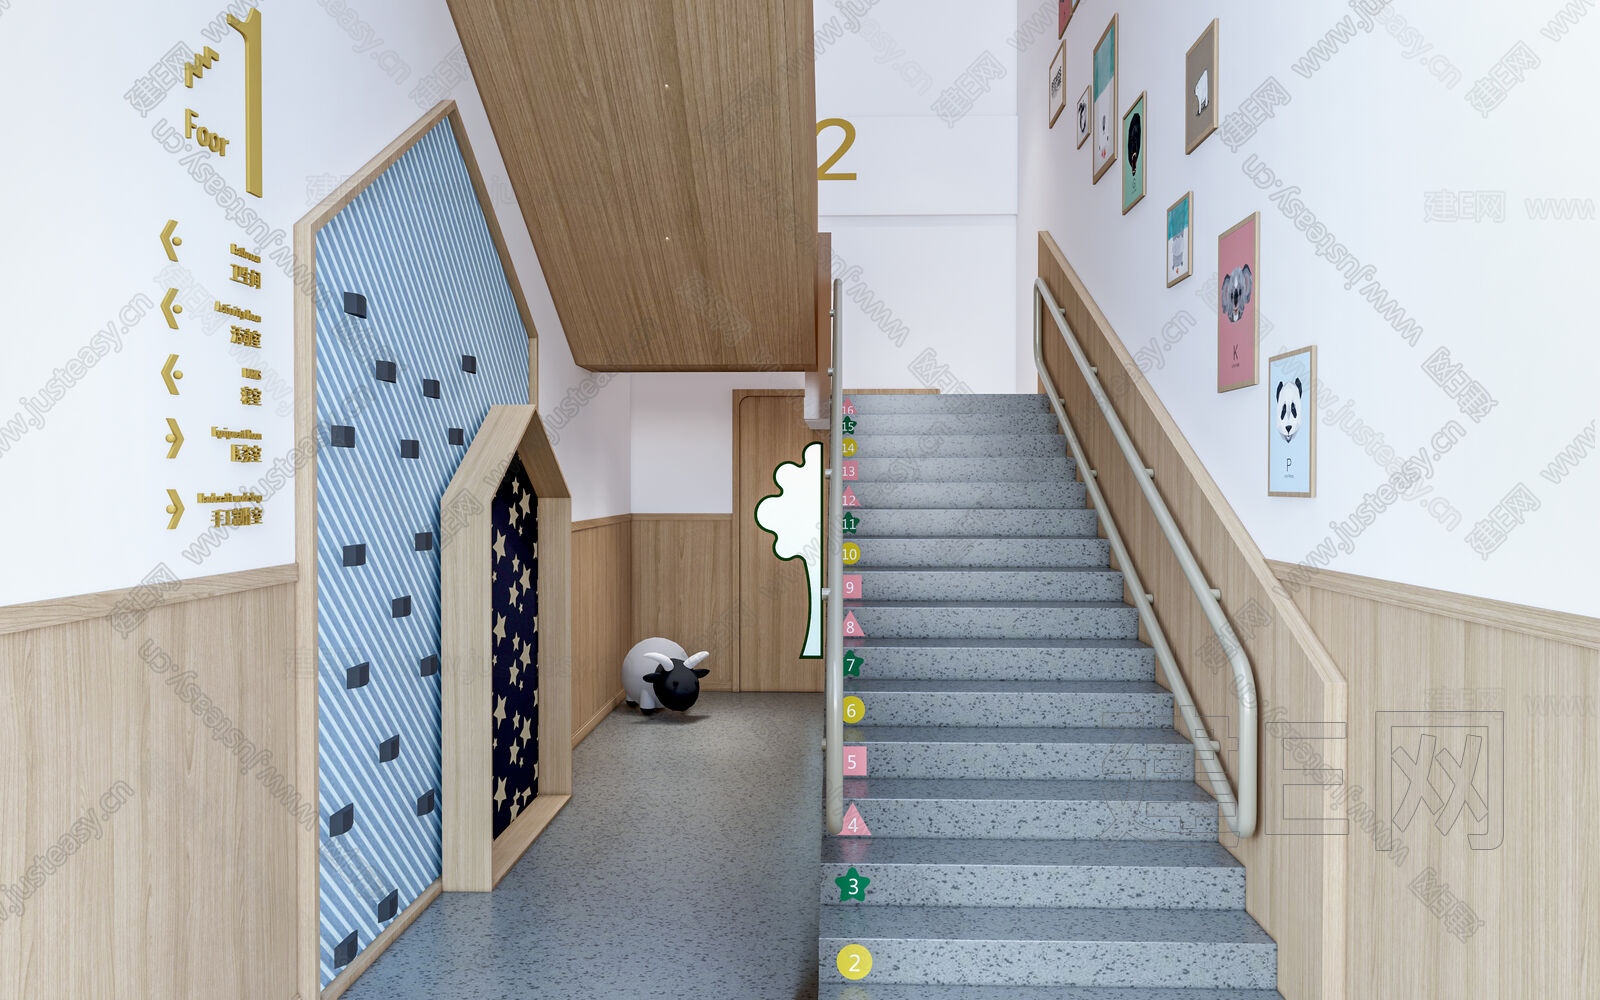 新塘新星幼儿园楼梯走廊PVC胶地板工程案例-同e居地板